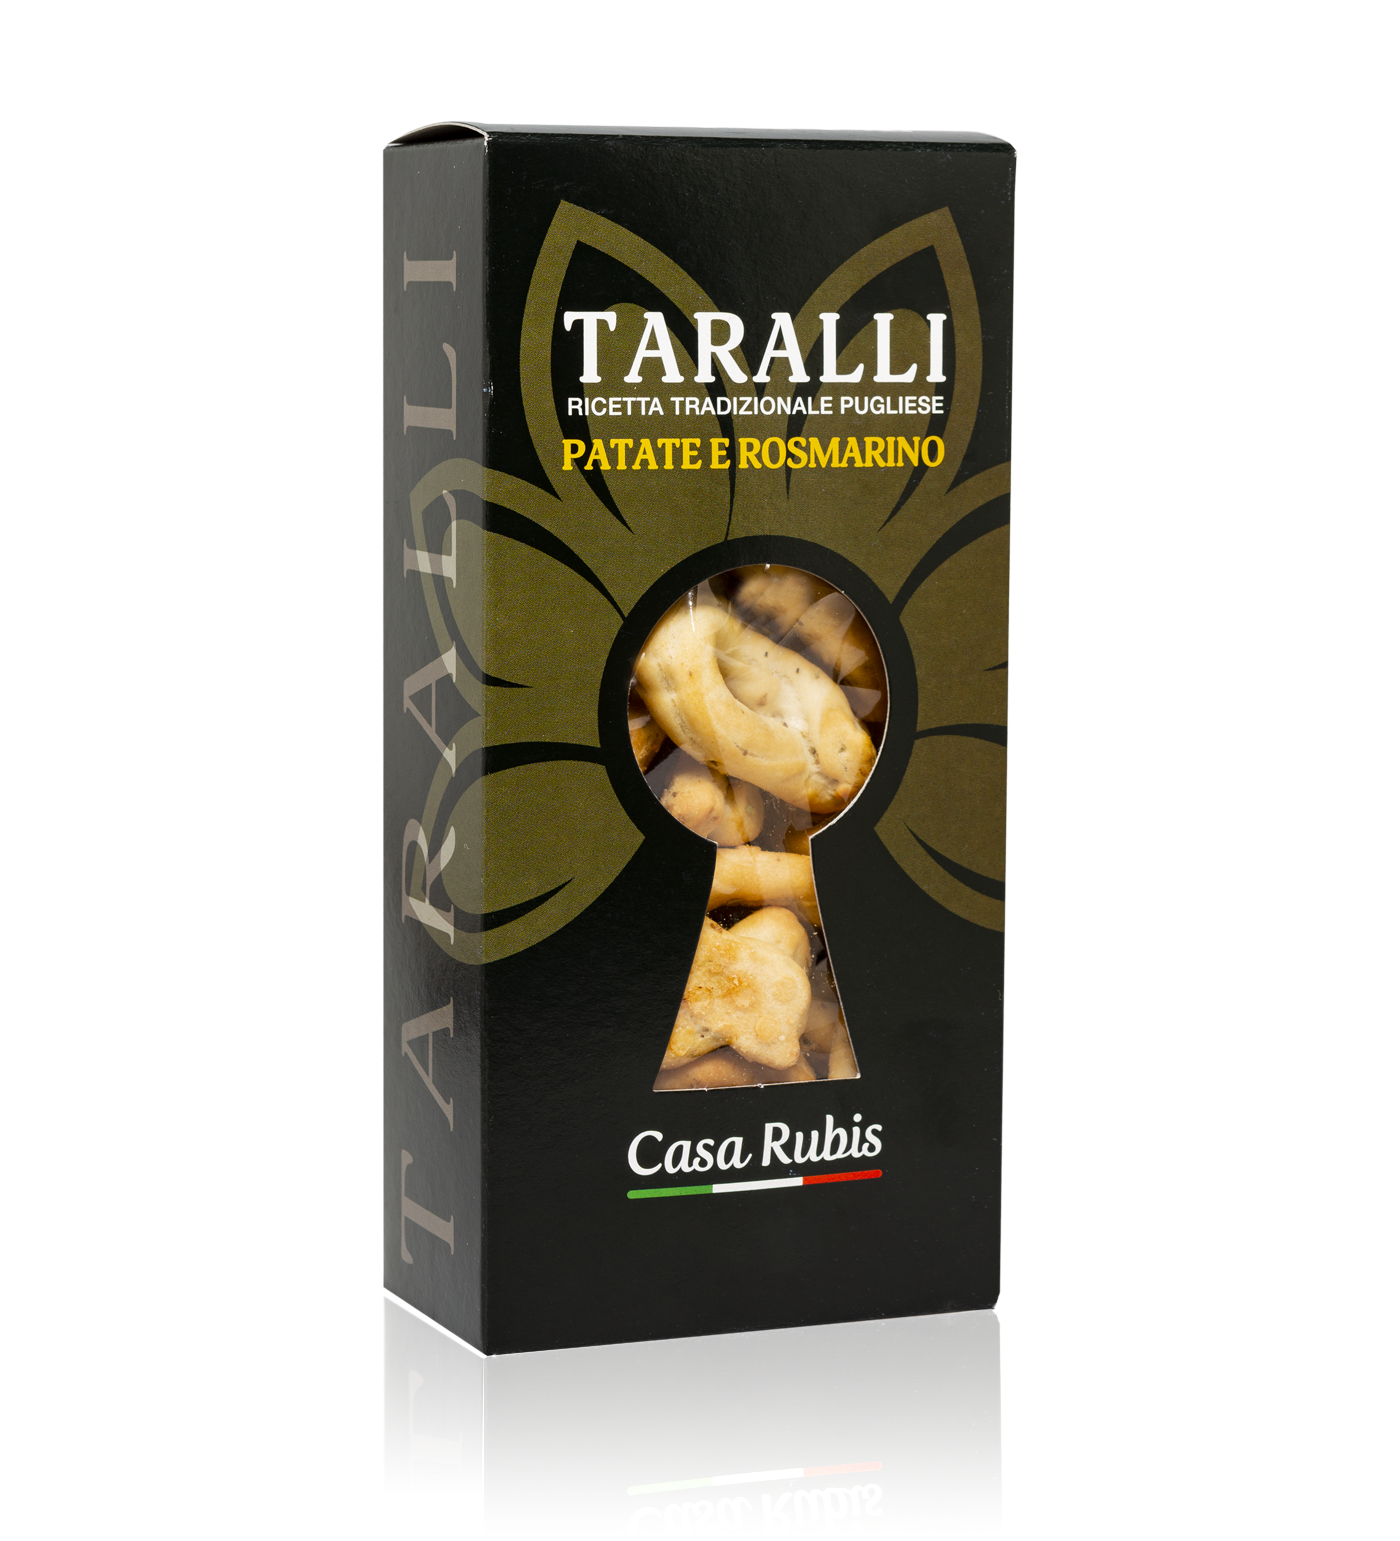 Taralli